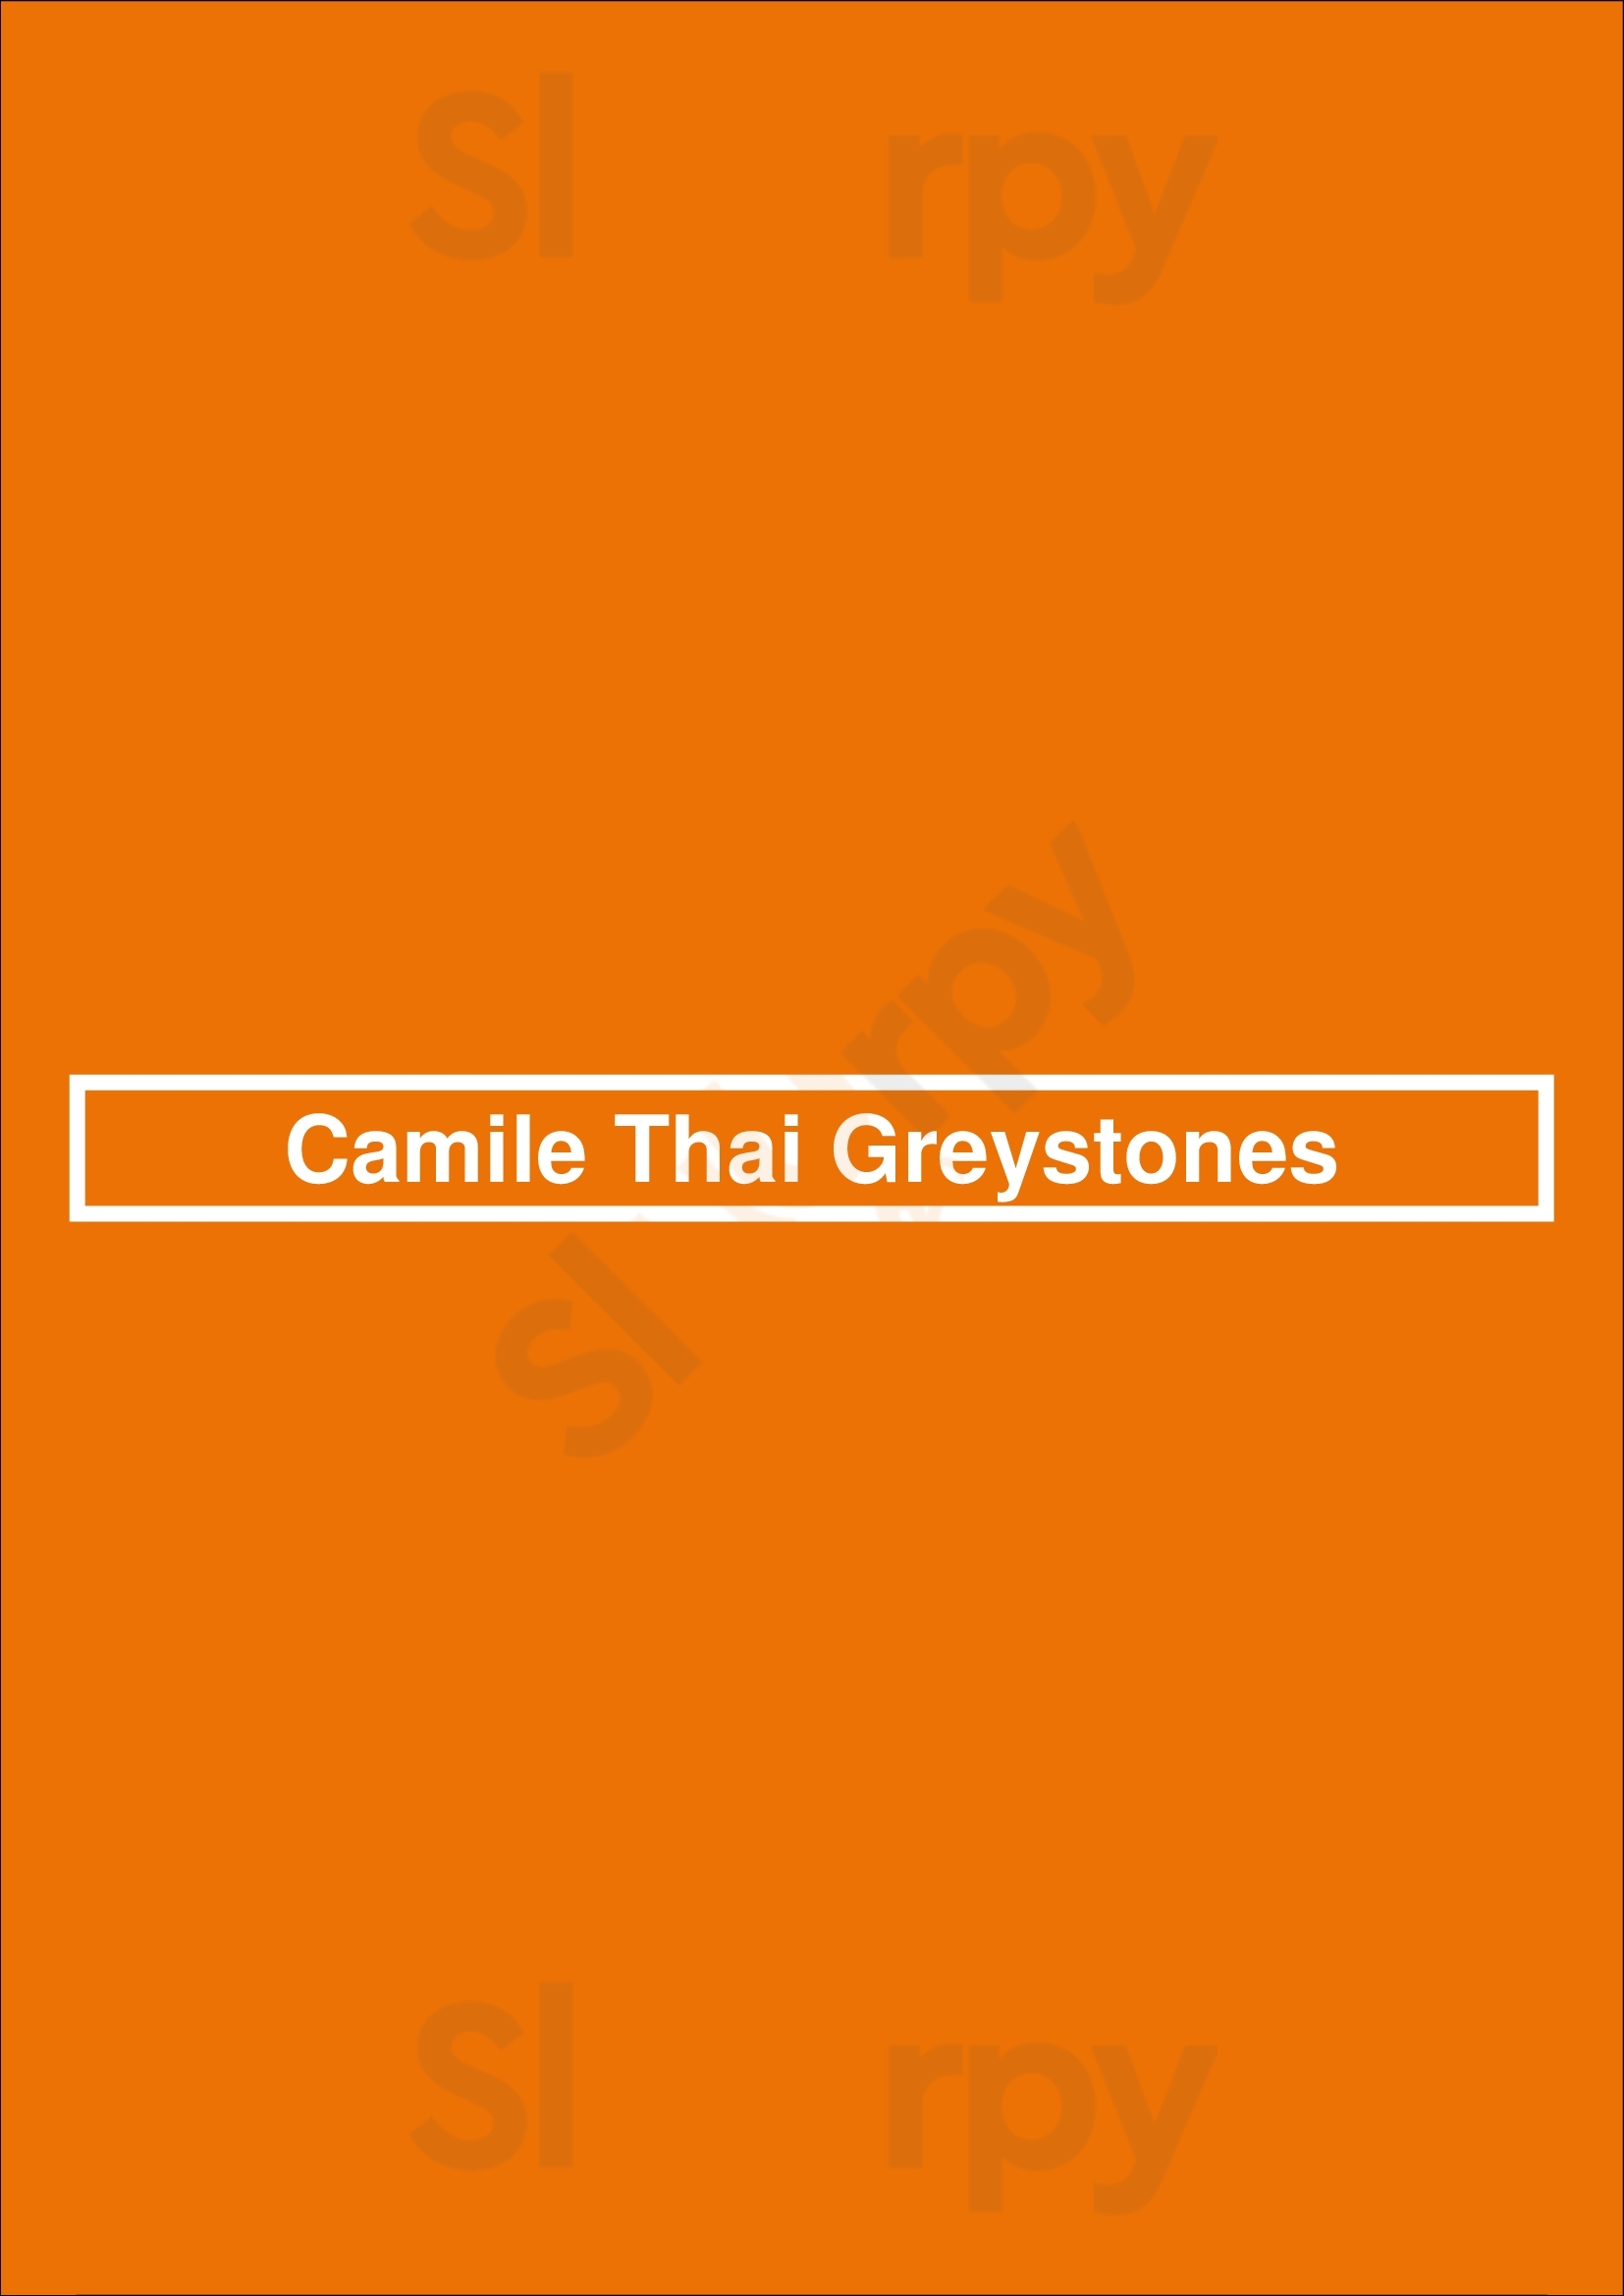 Camile Thai Greystones Greystones Menu - 1